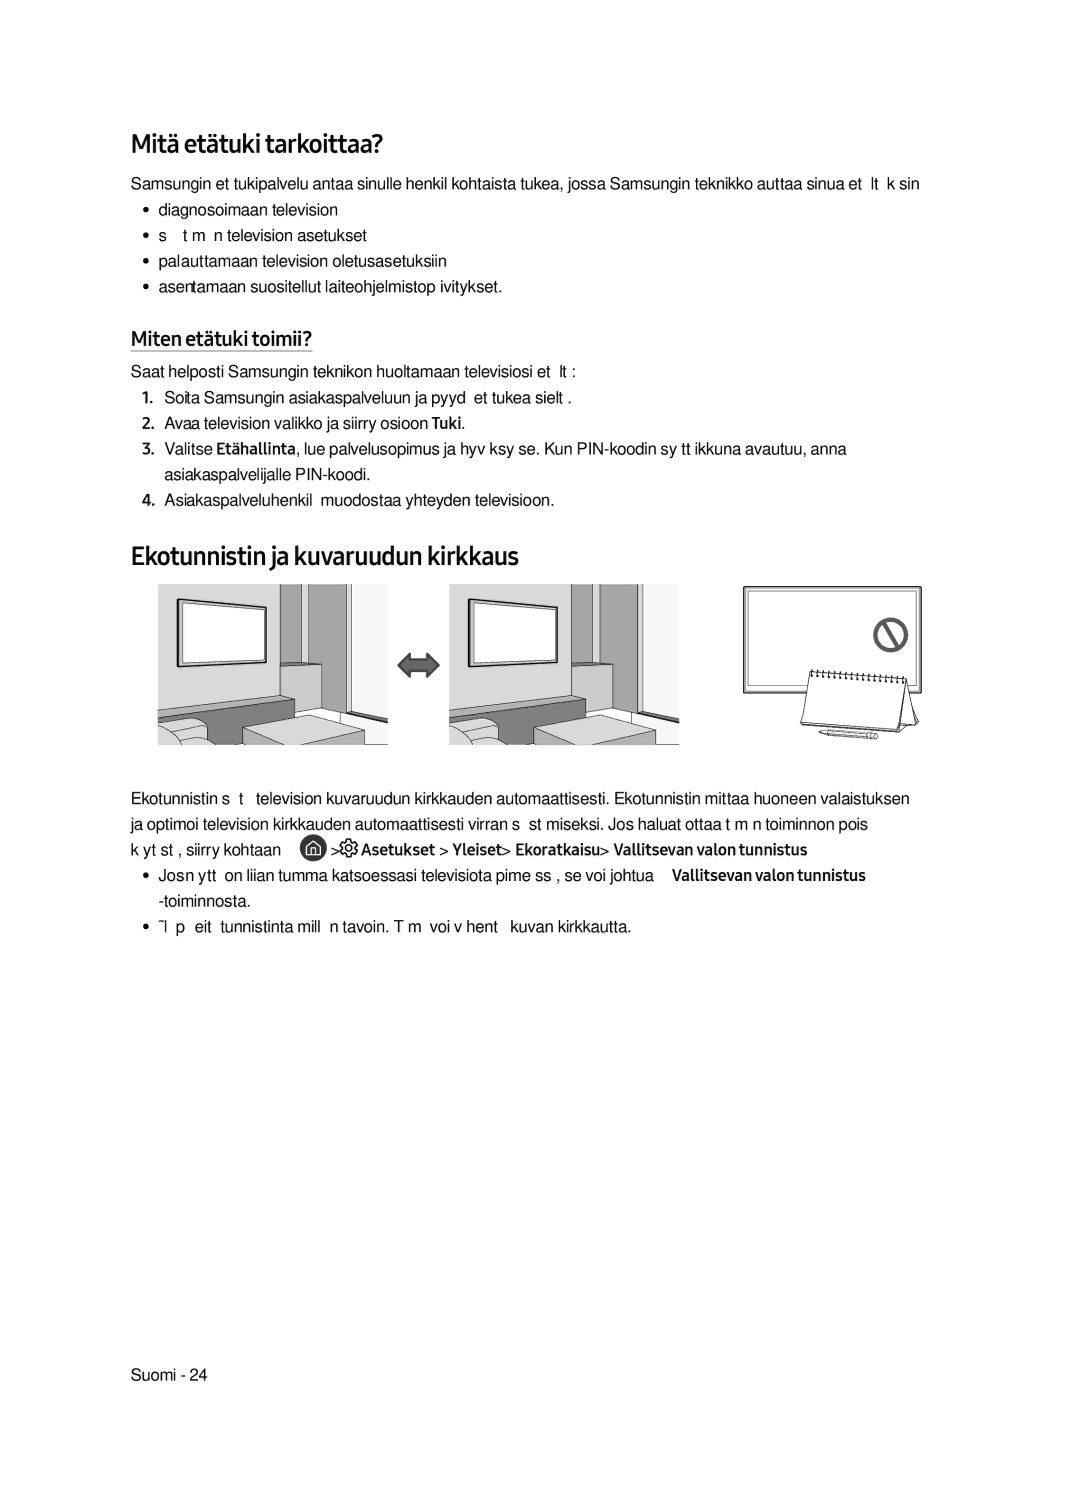 Samsung UE43LS003AUXZG manual Mitä etätuki tarkoittaa?, Ekotunnistin ja kuvaruudun kirkkaus, Miten etätuki toimii? 